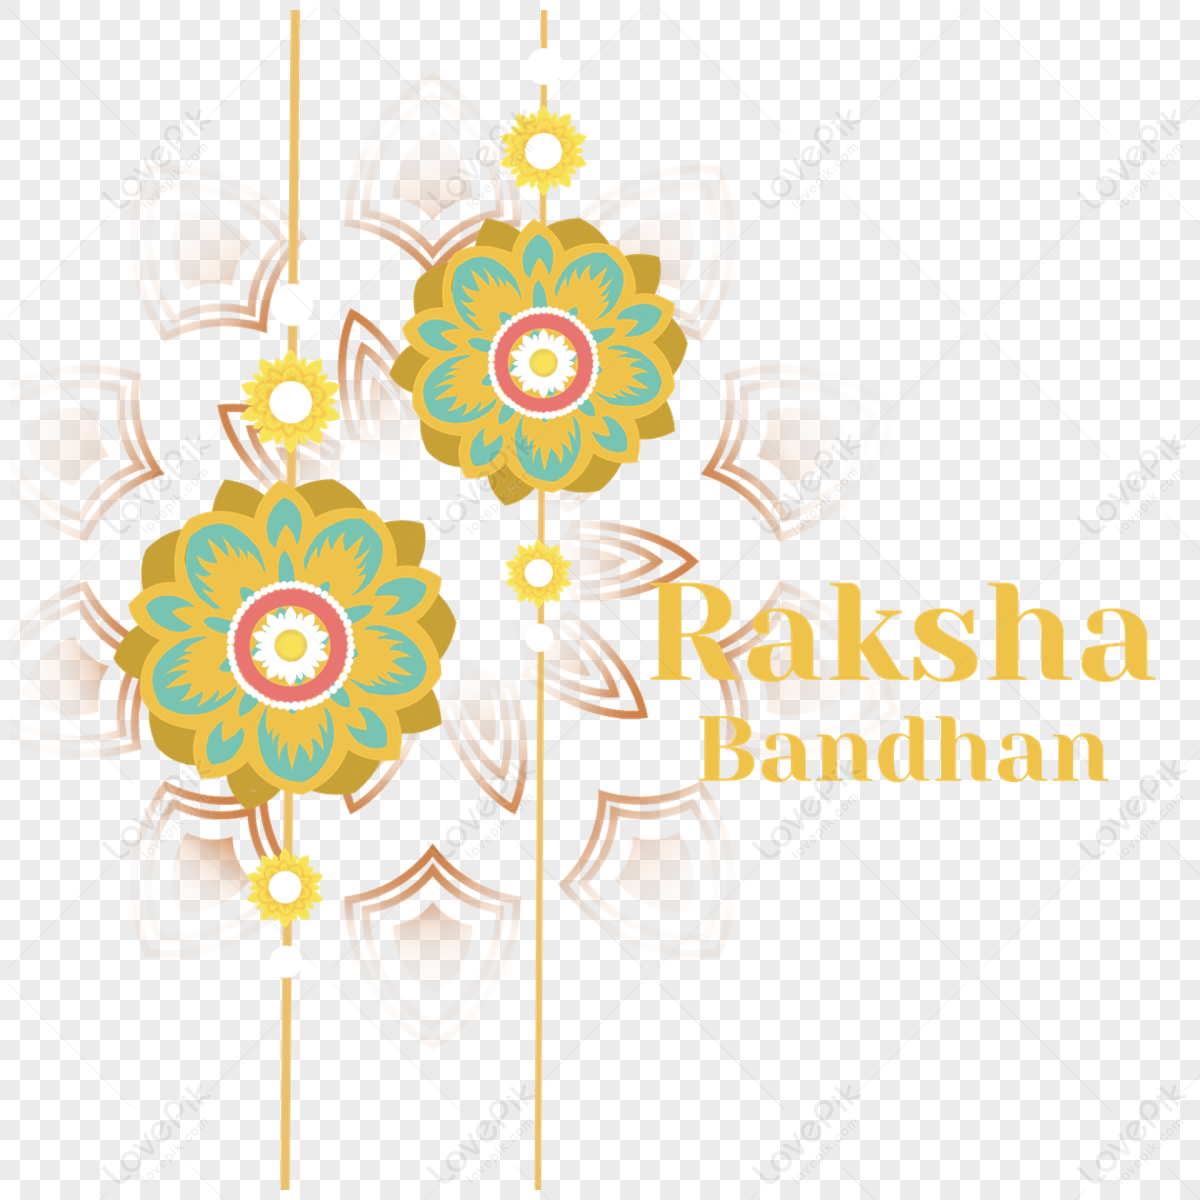 Raksha Bandhan : Happy Raksha Bandhan HD Images Free Download